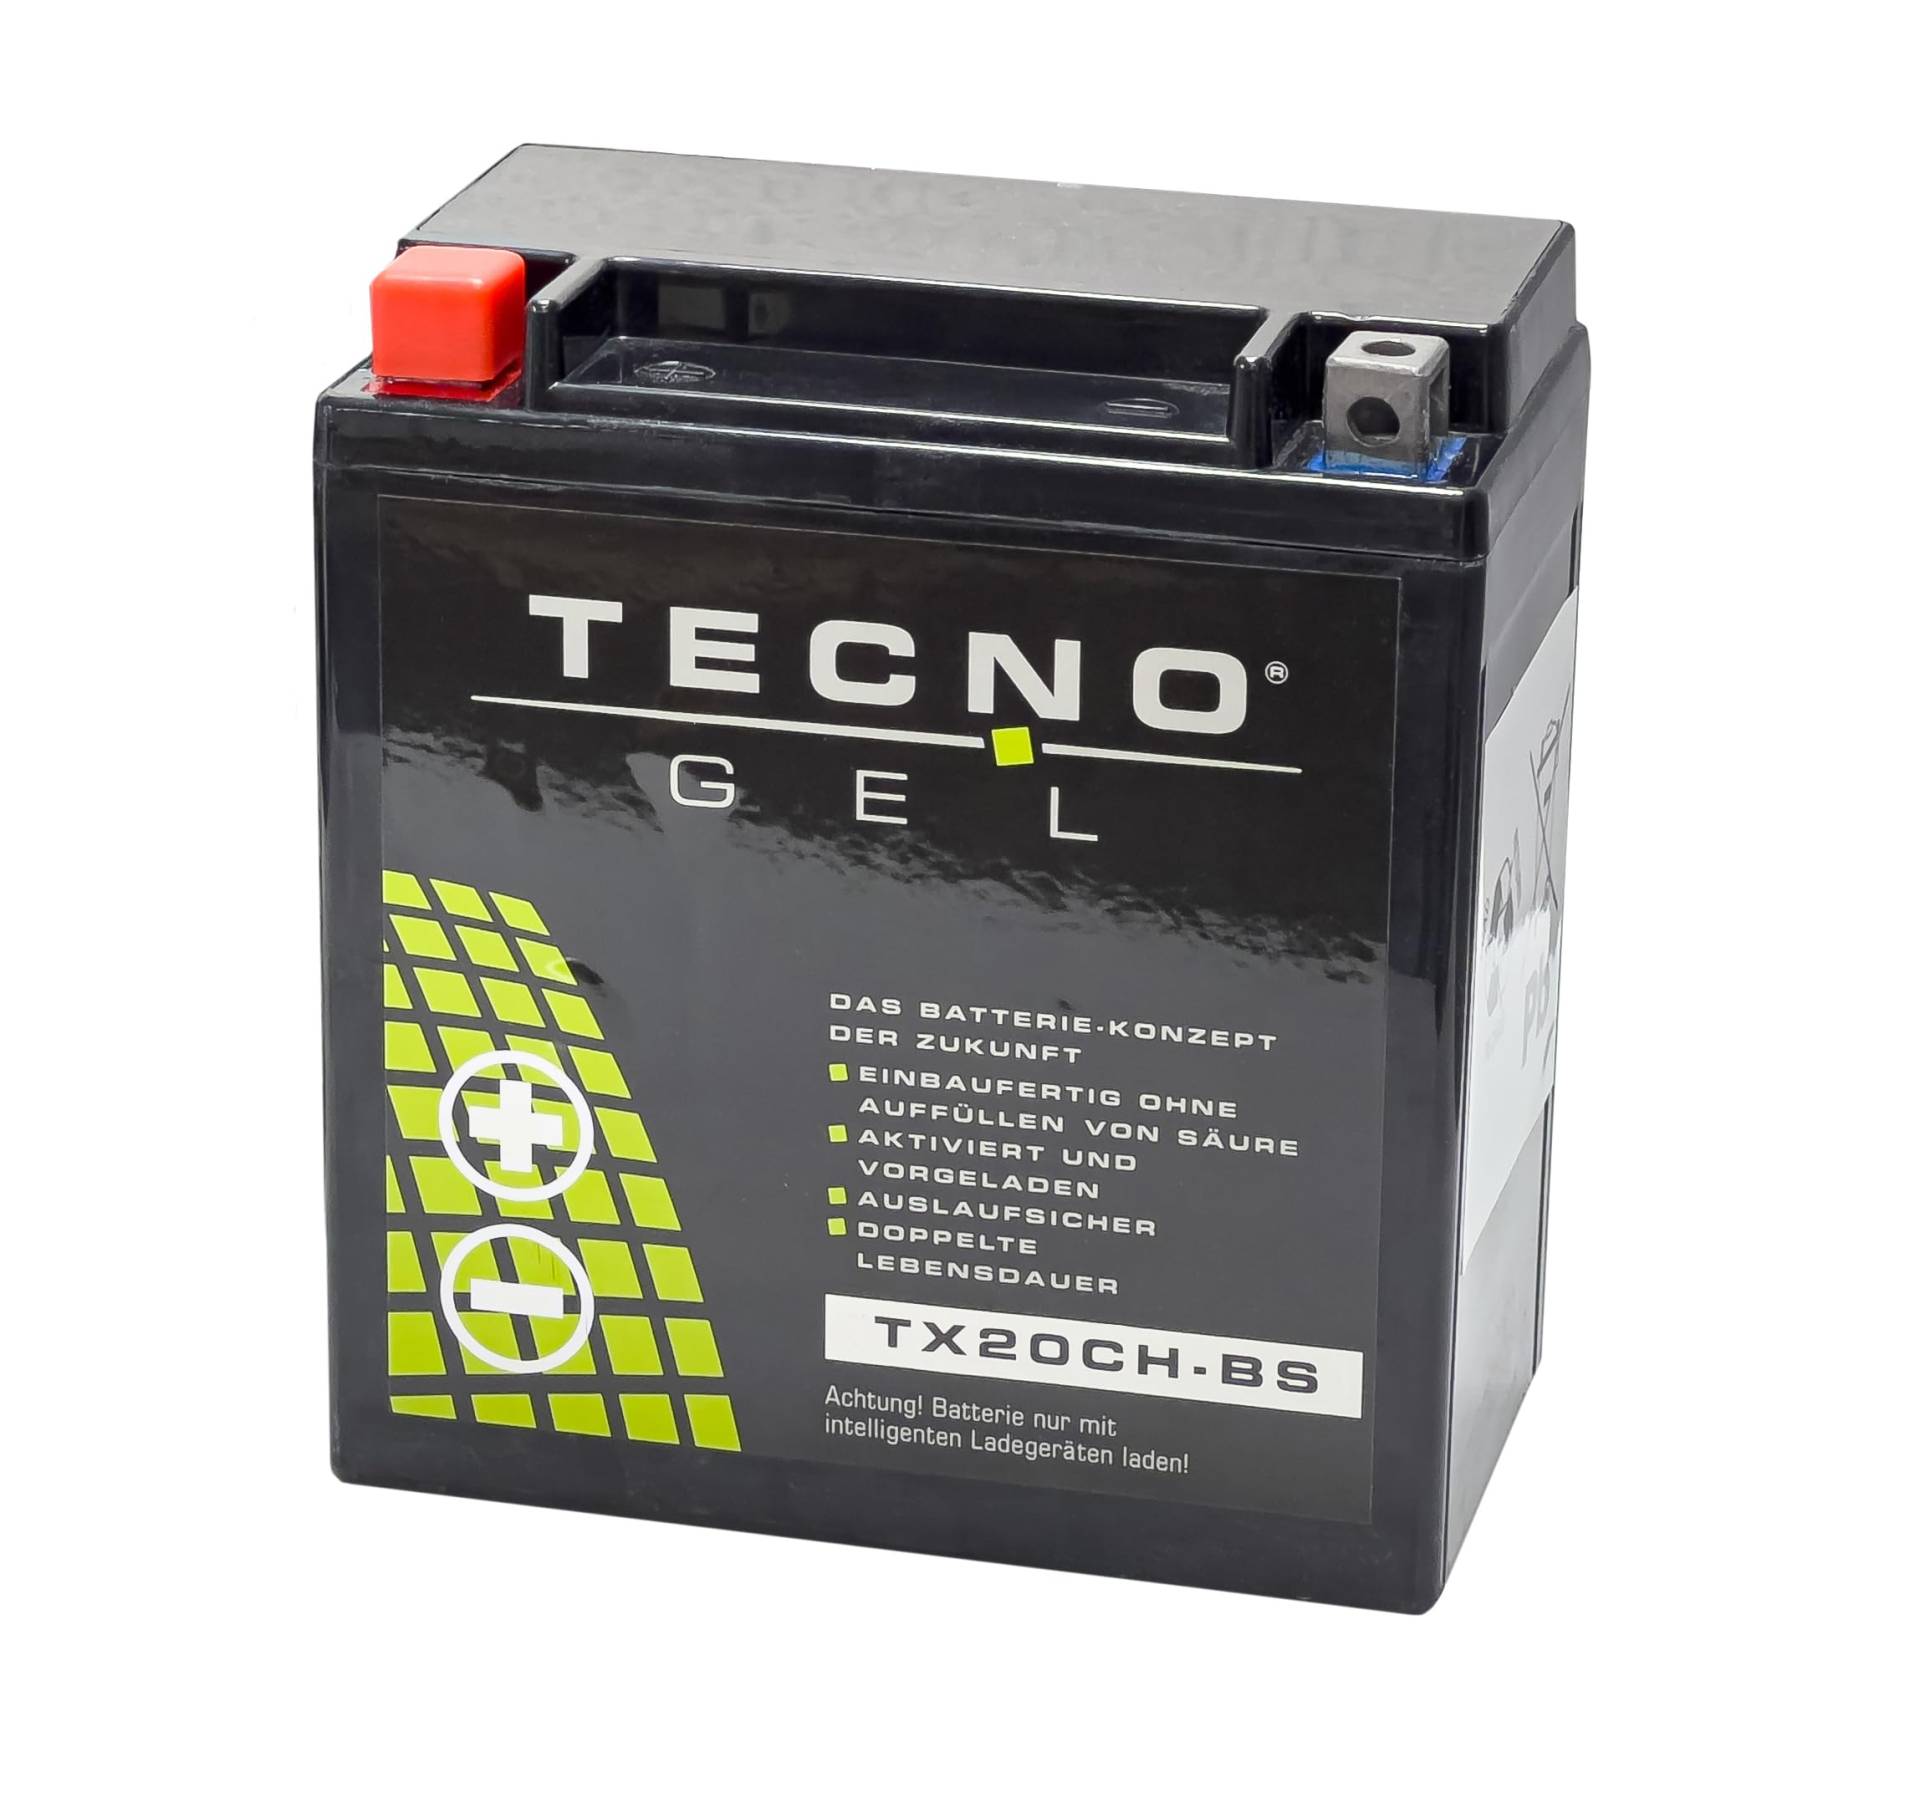 TECNO-GEL Motorrad-Batterie für YTX20CH-BS für MOTO MORINI Scrambler, Sport 1200 2013-2019, 12V Gel-Batterie 18Ah, 150x87x161 mm von Wirth-Federn